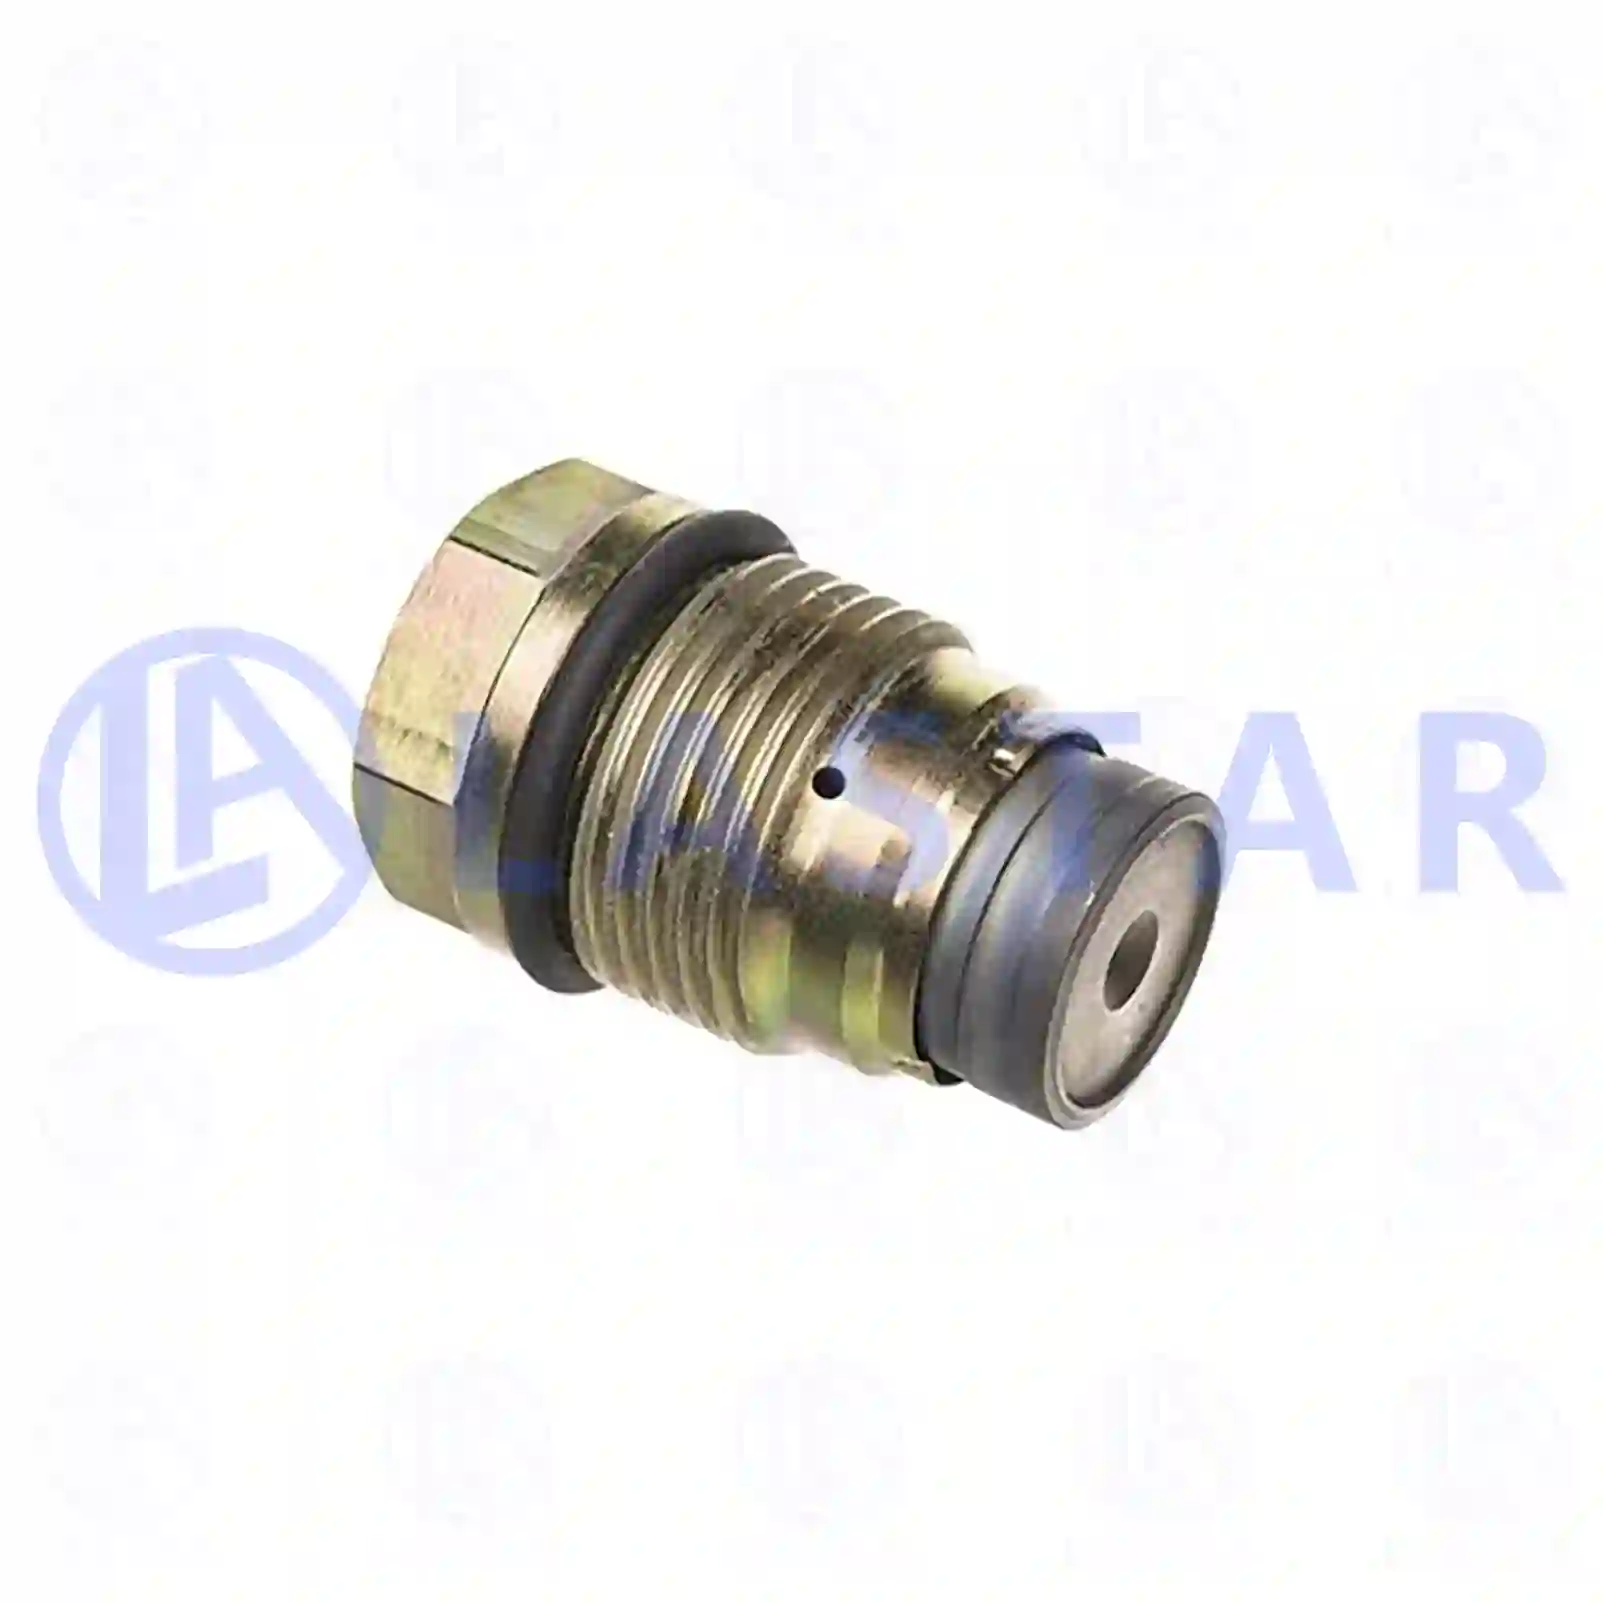 Nozzle Holder Pressure limiting valve, Common Rail, la no: 77723205 ,  oem no:42562997, 504088436, 51103040278, 51103040291, 7420793590, 20793590, 3588337, 3884350, 07W133035, ZG10492-0008 Lastar Spare Part | Truck Spare Parts, Auotomotive Spare Parts